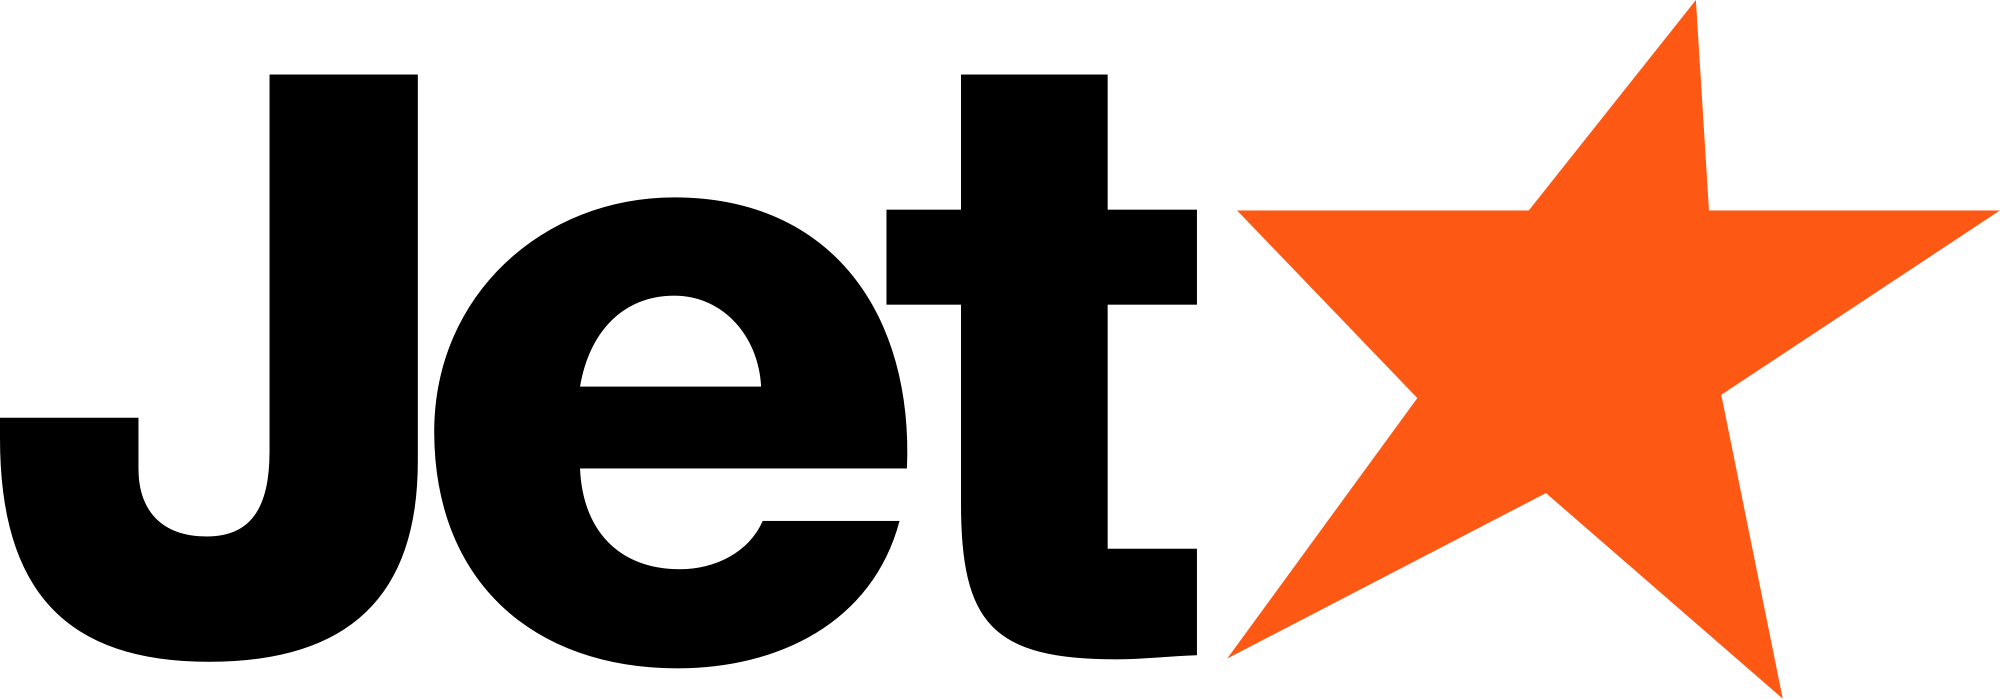 Jetstar Logo - Jetstar Logo.svg